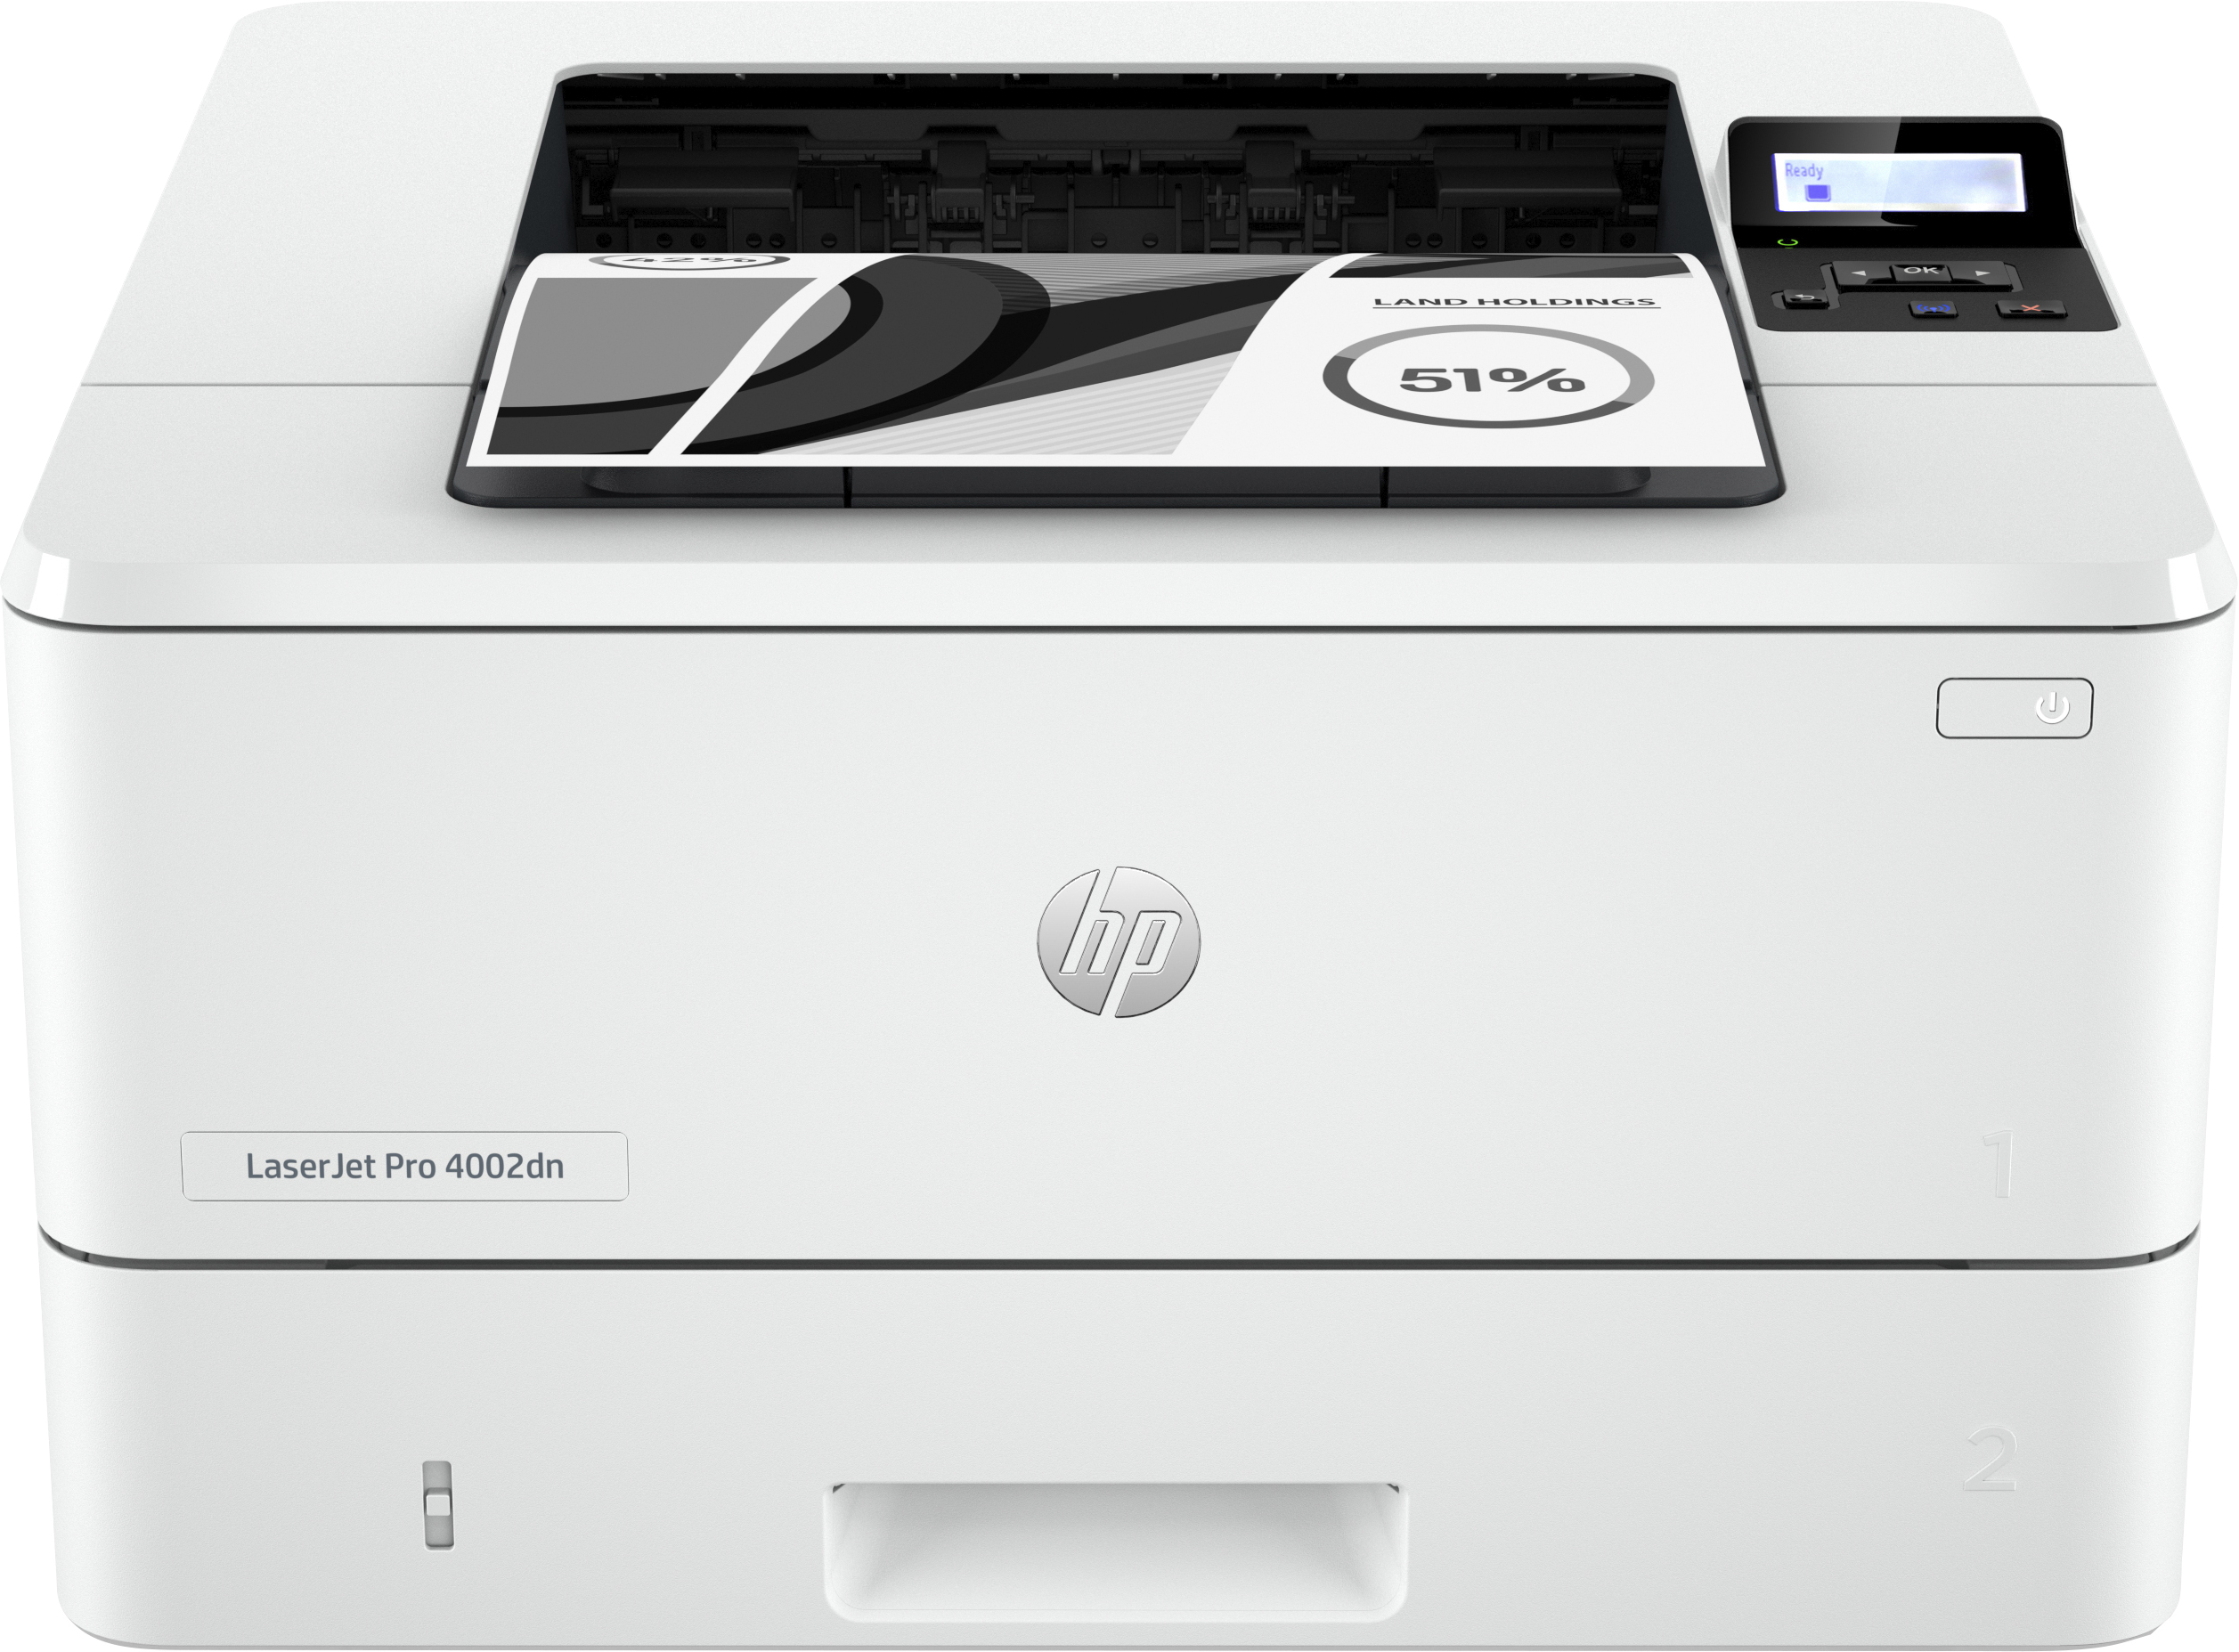 Image of HP LaserJet Pro Stampante 4002dn, Bianco e nero, Stampante per Piccole e medie imprese, Stampa, Stampa fronte/retro; elevata velocità di stampa della prima pagina; risparmio energetico; dimensioni compatte; Avanzate funzionalità di sicurezza